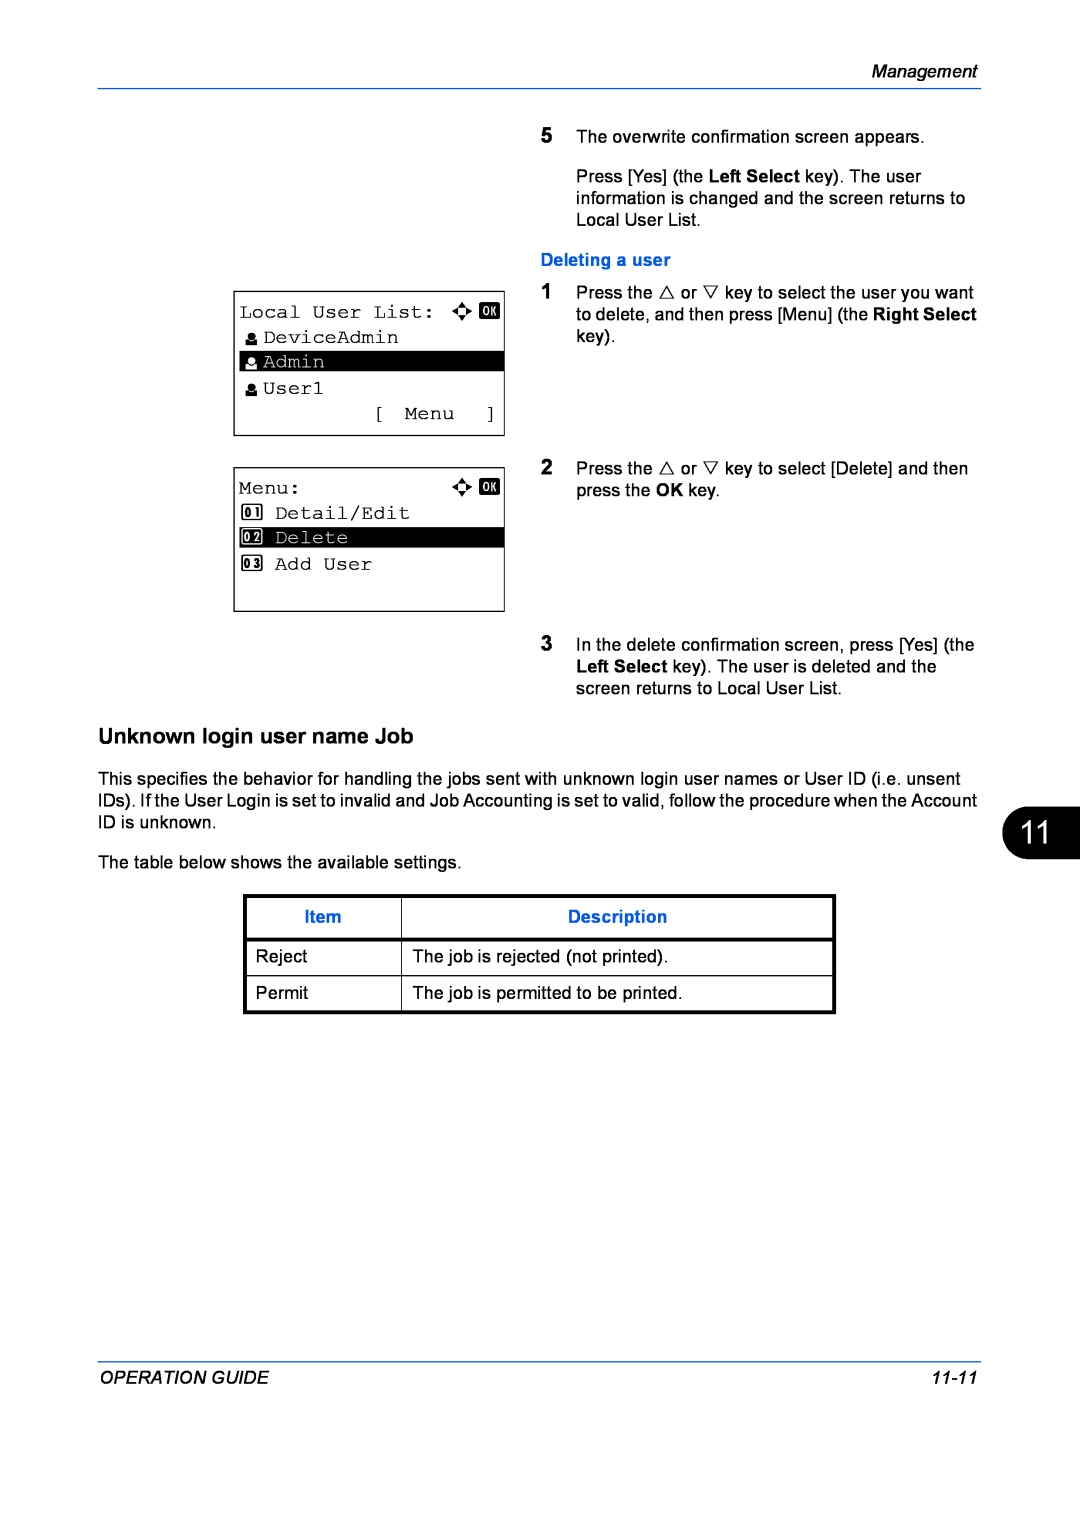 Kyocera FS-1128MFP Unknown login user name Job, Local User List a b l DeviceAdmin, l User1 Menu, Detail/Edit, Add User 